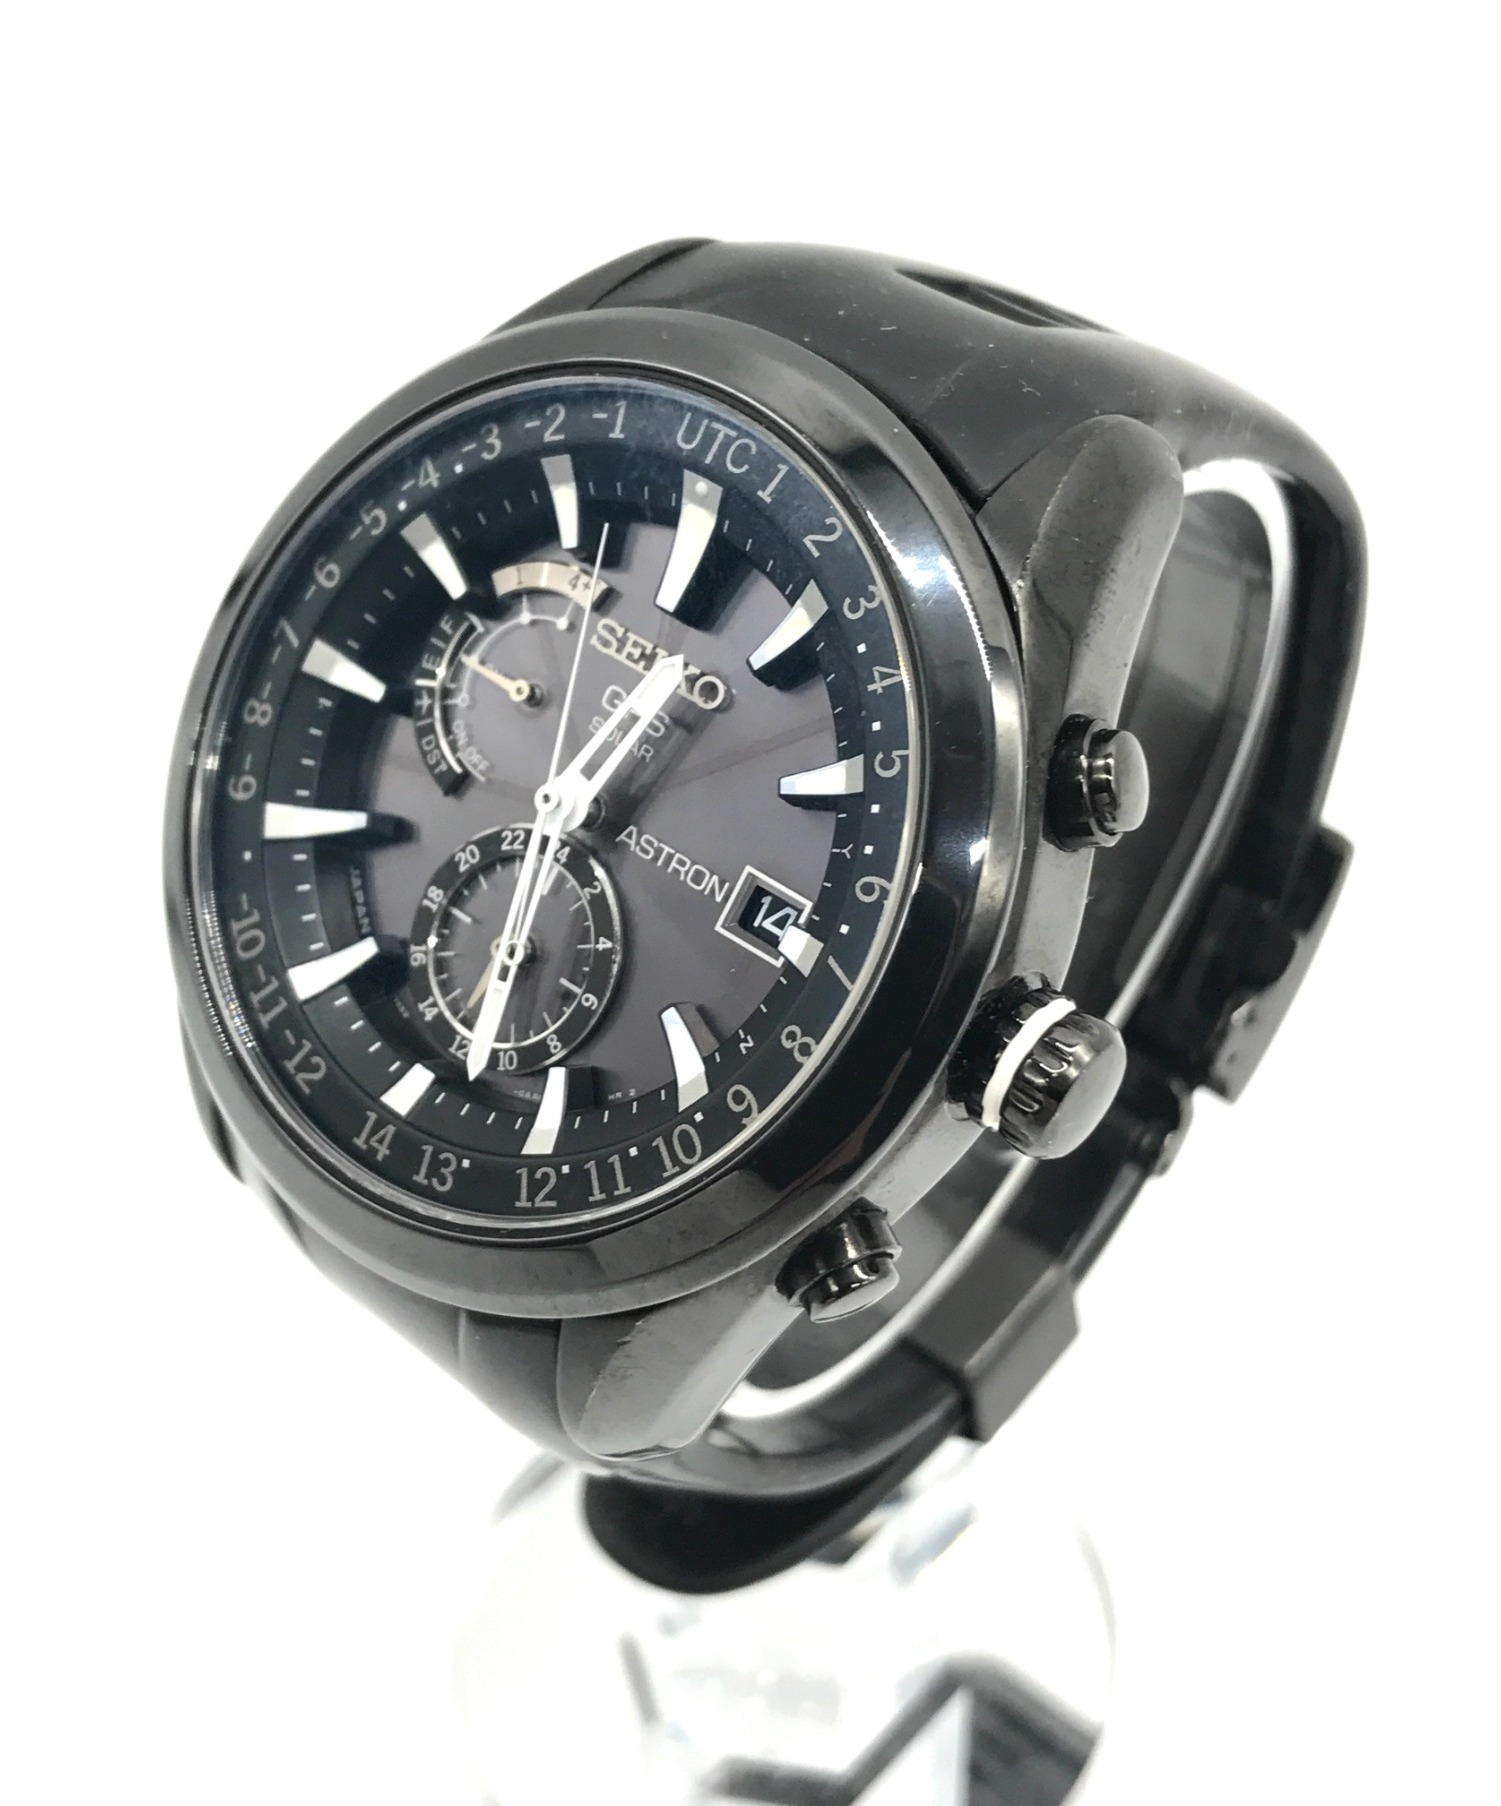 SEIKO (セイコー) GPSソーラー腕時計 サイズ:実寸サイズをご確認ください。 アストロン